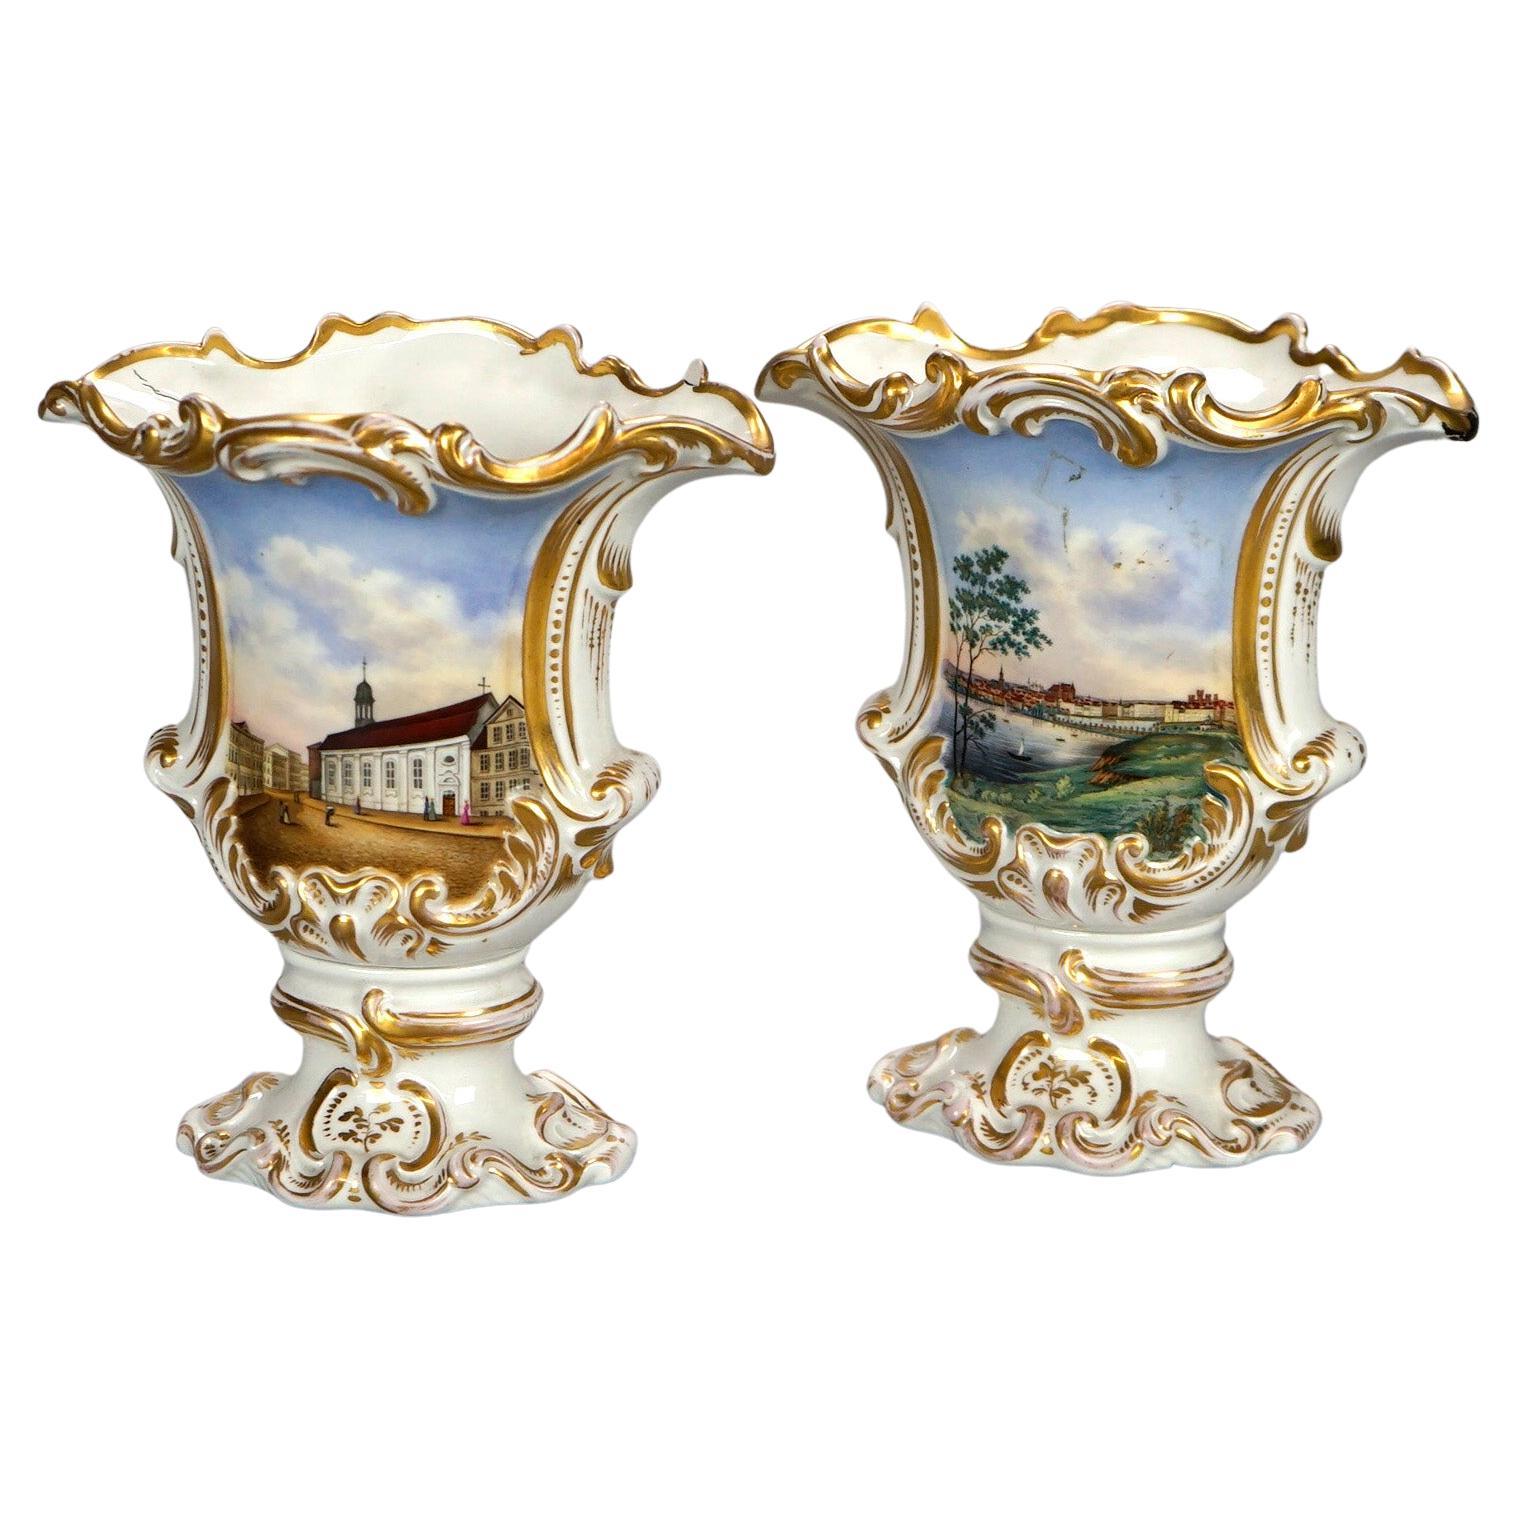 Paire de vases scéniques allemands peints et dorés à la main 19ème siècle